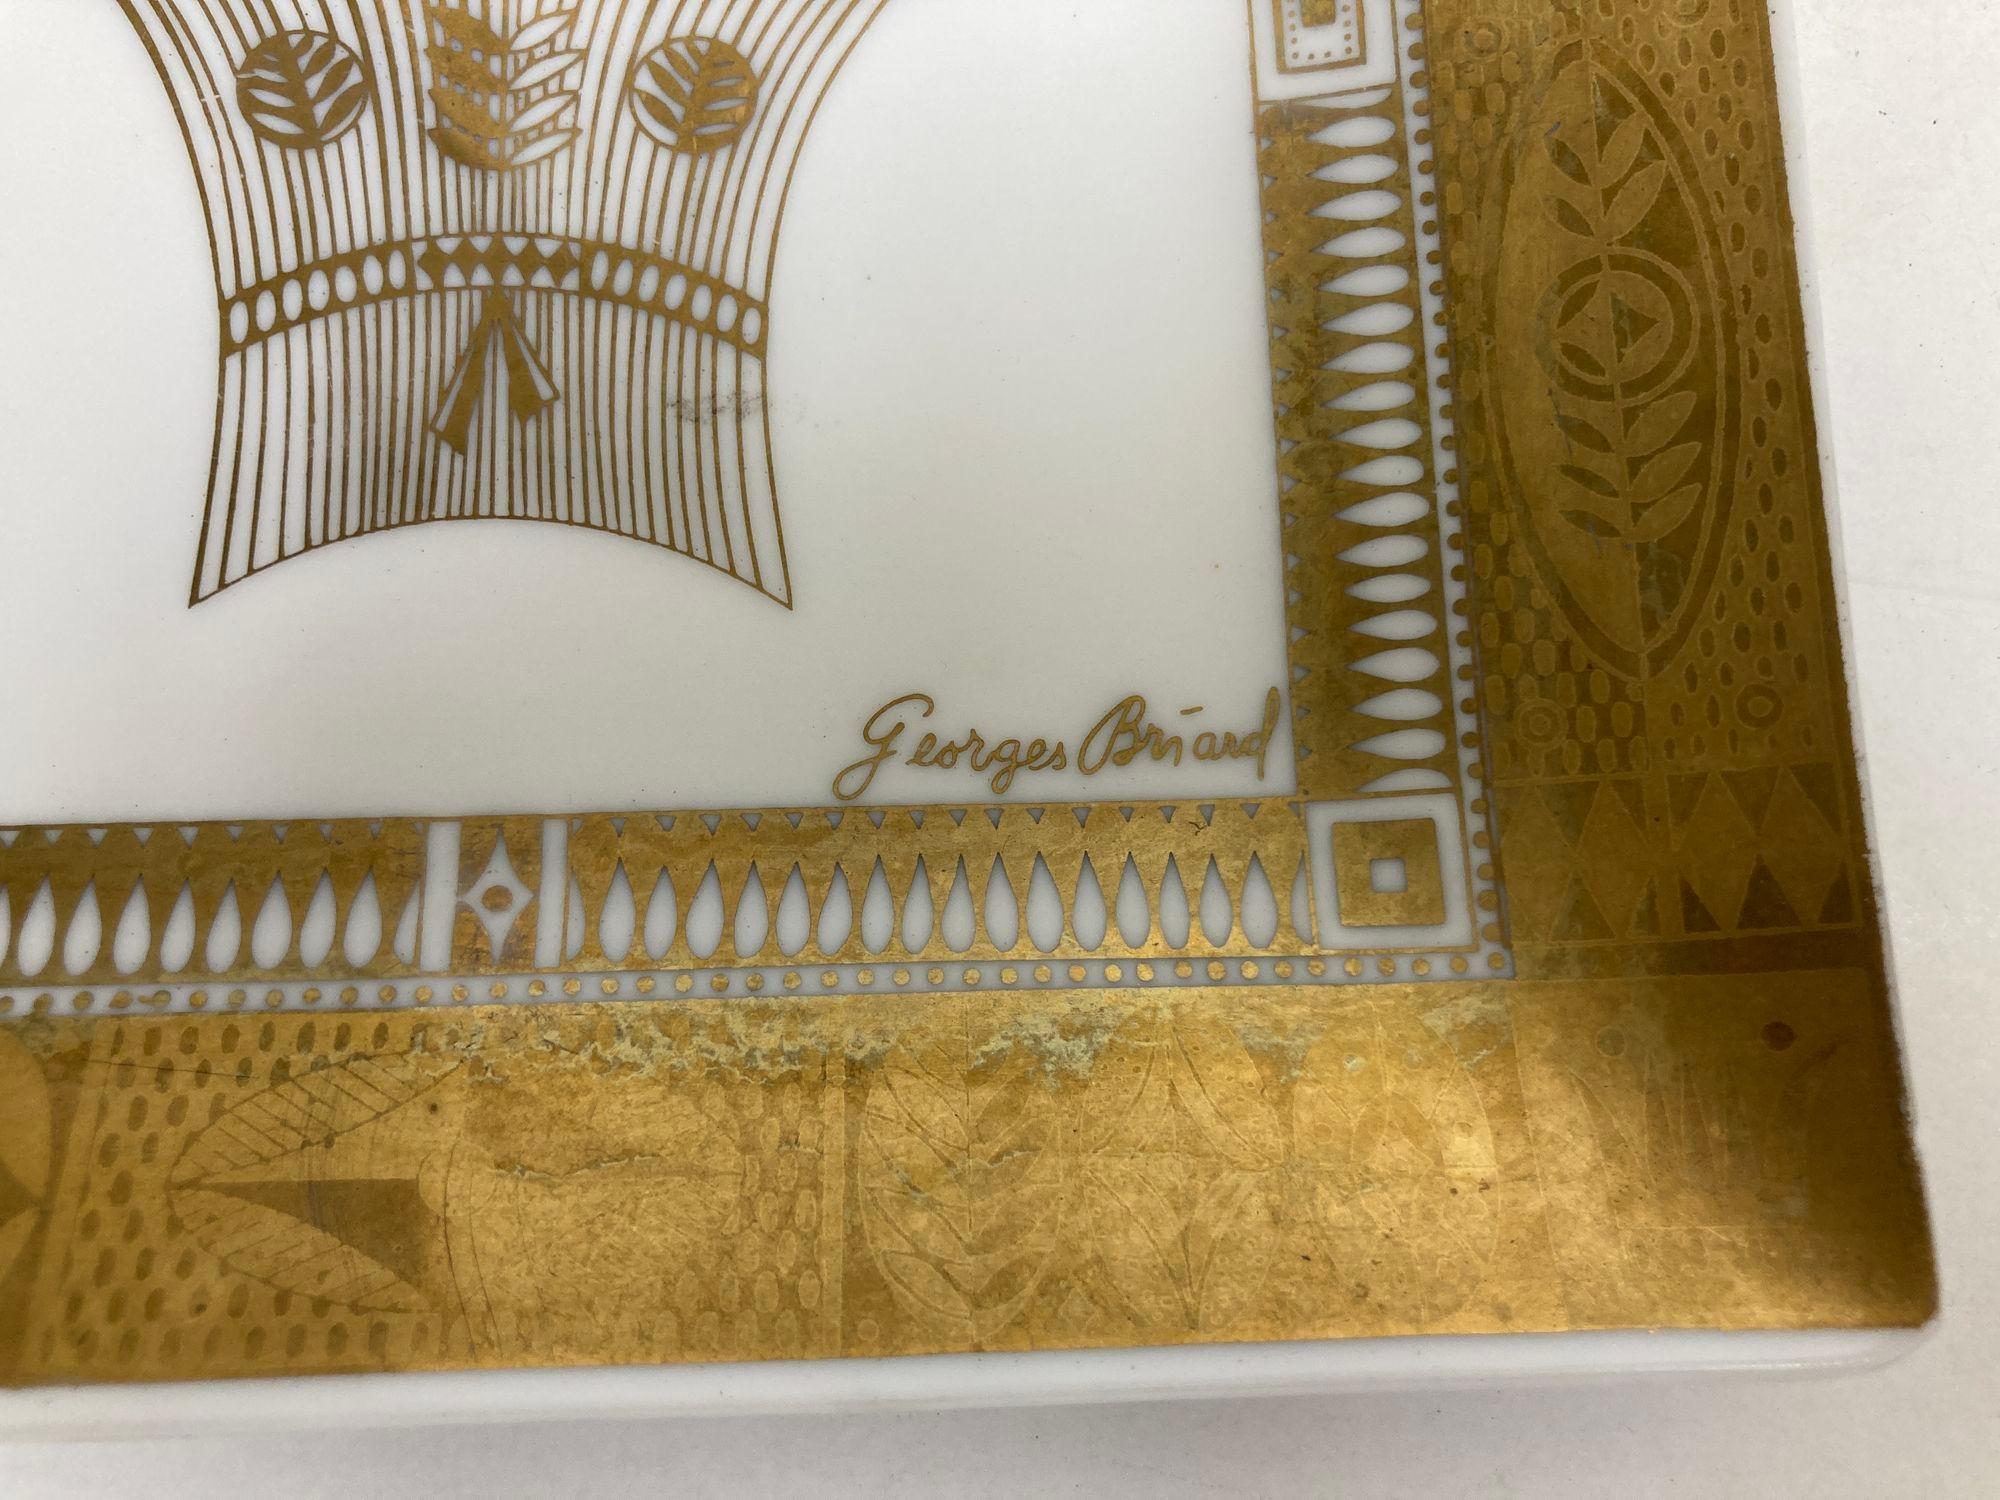 Plat à plateau en verre au lait Georges Briard de style Art Déco avec motif de moisson d'or.
Superbe plateau en verre courbé de style moderne du milieu du siècle, avec centre en or 22k et accents de design de la récolte.
Conçu et signé par Georges